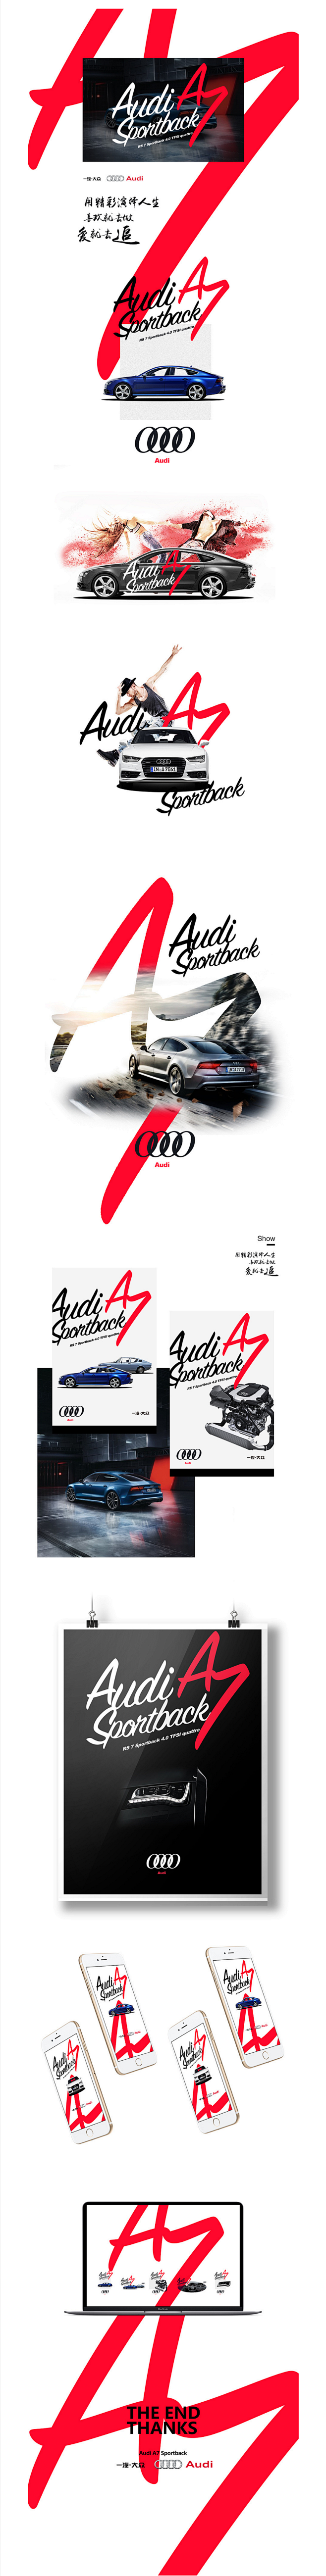 爱就去追 最美 Audi A7 Spor...